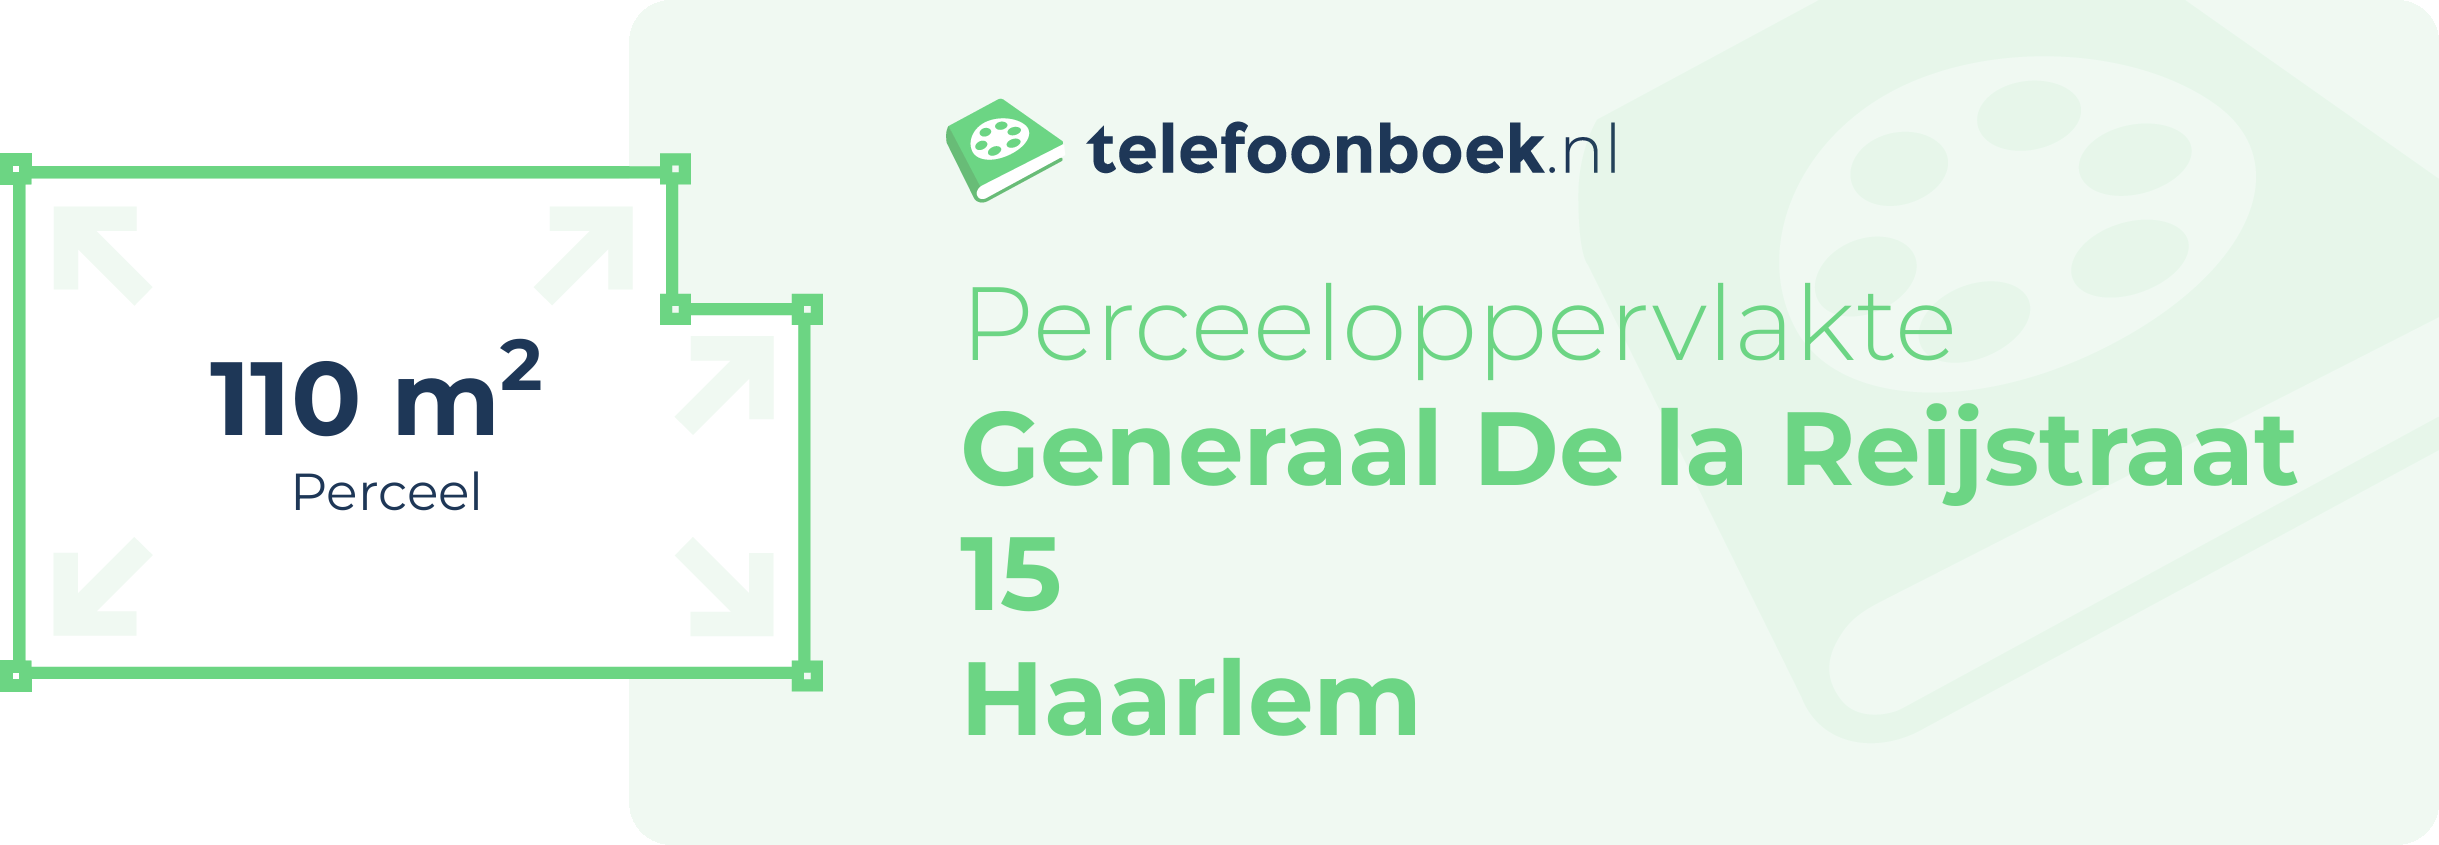 Perceeloppervlakte Generaal De La Reijstraat 15 Haarlem